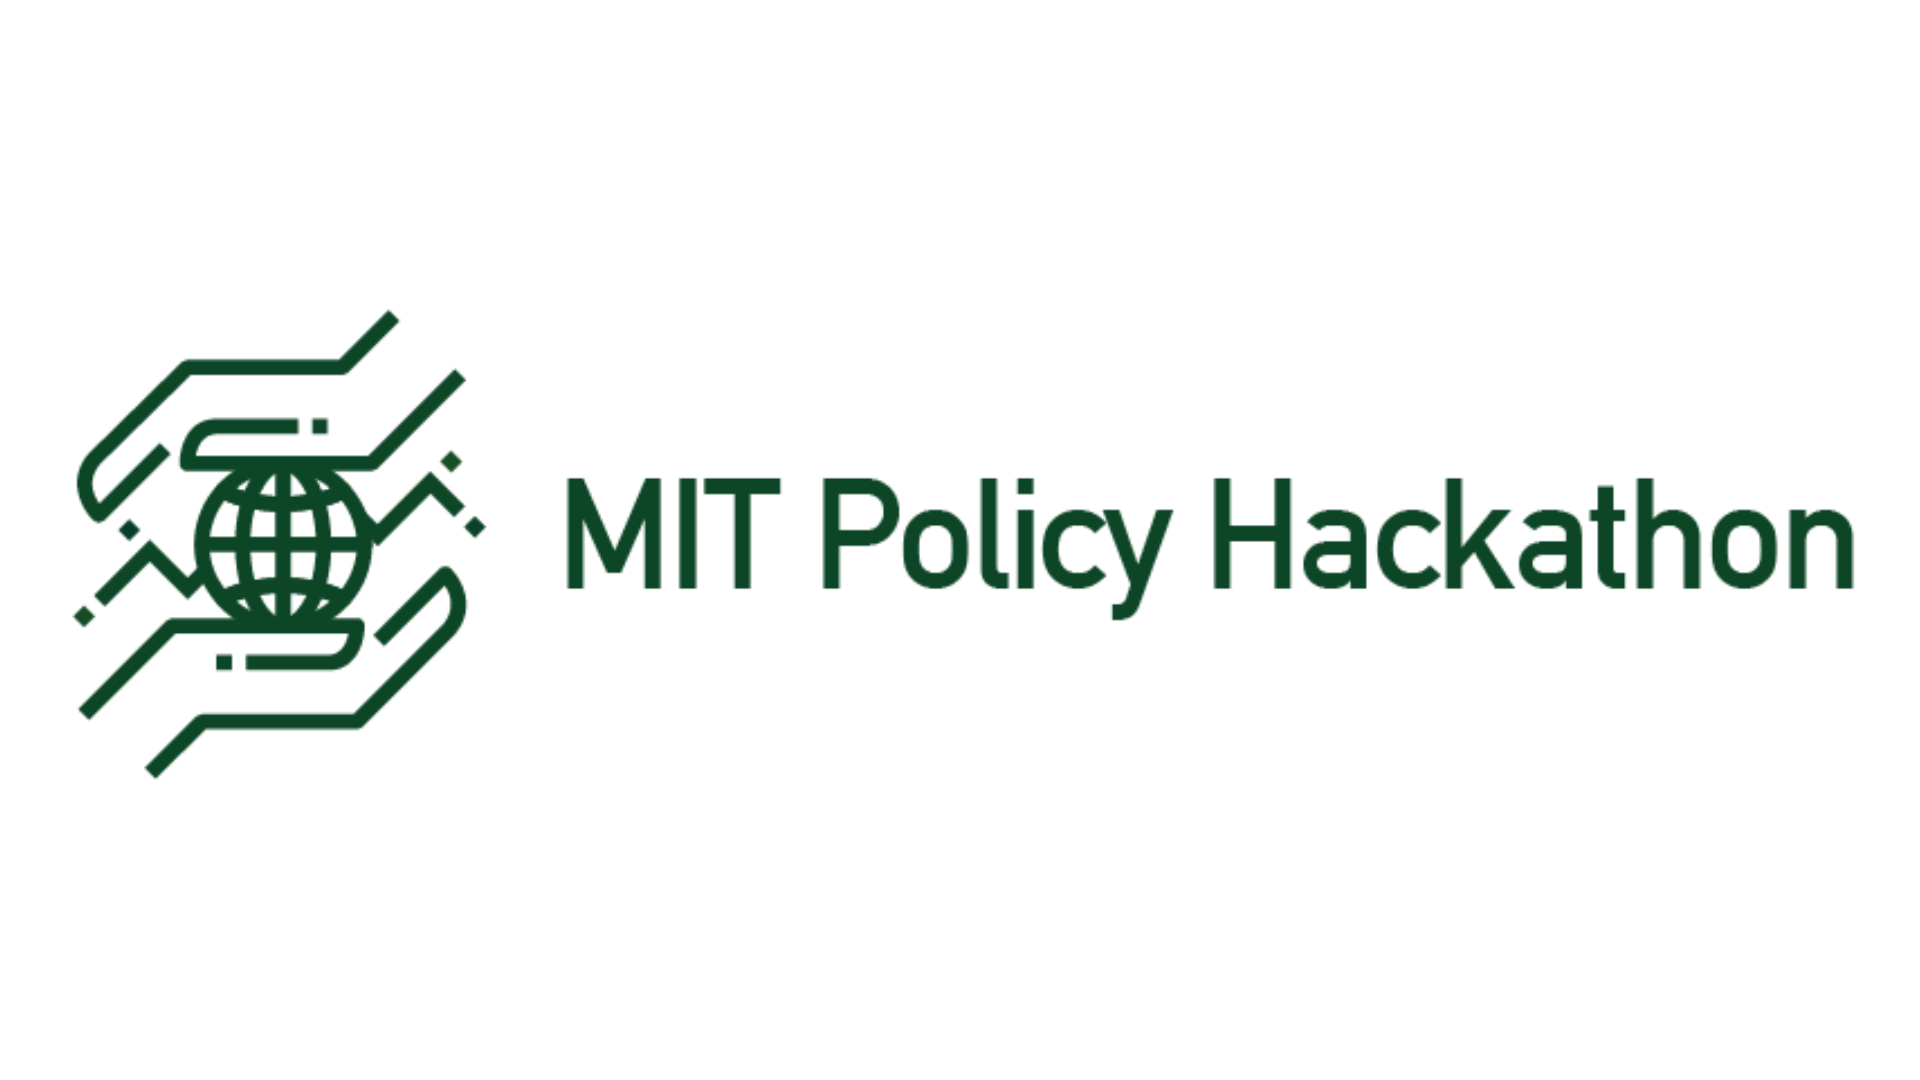 MIT Policy Hackathon